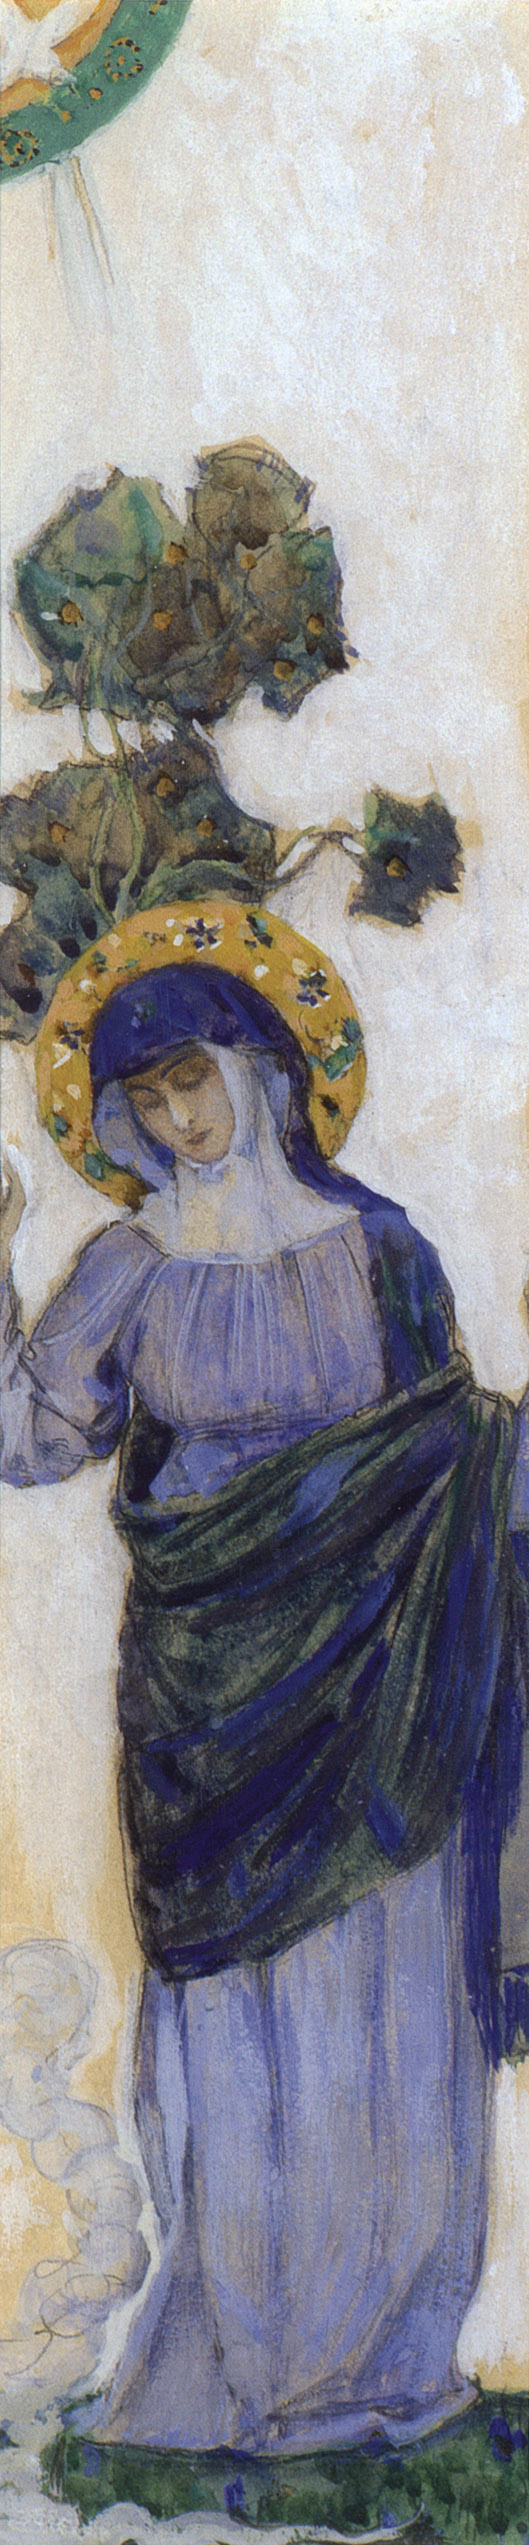 Нестеров М.. Дева Мария. 1908